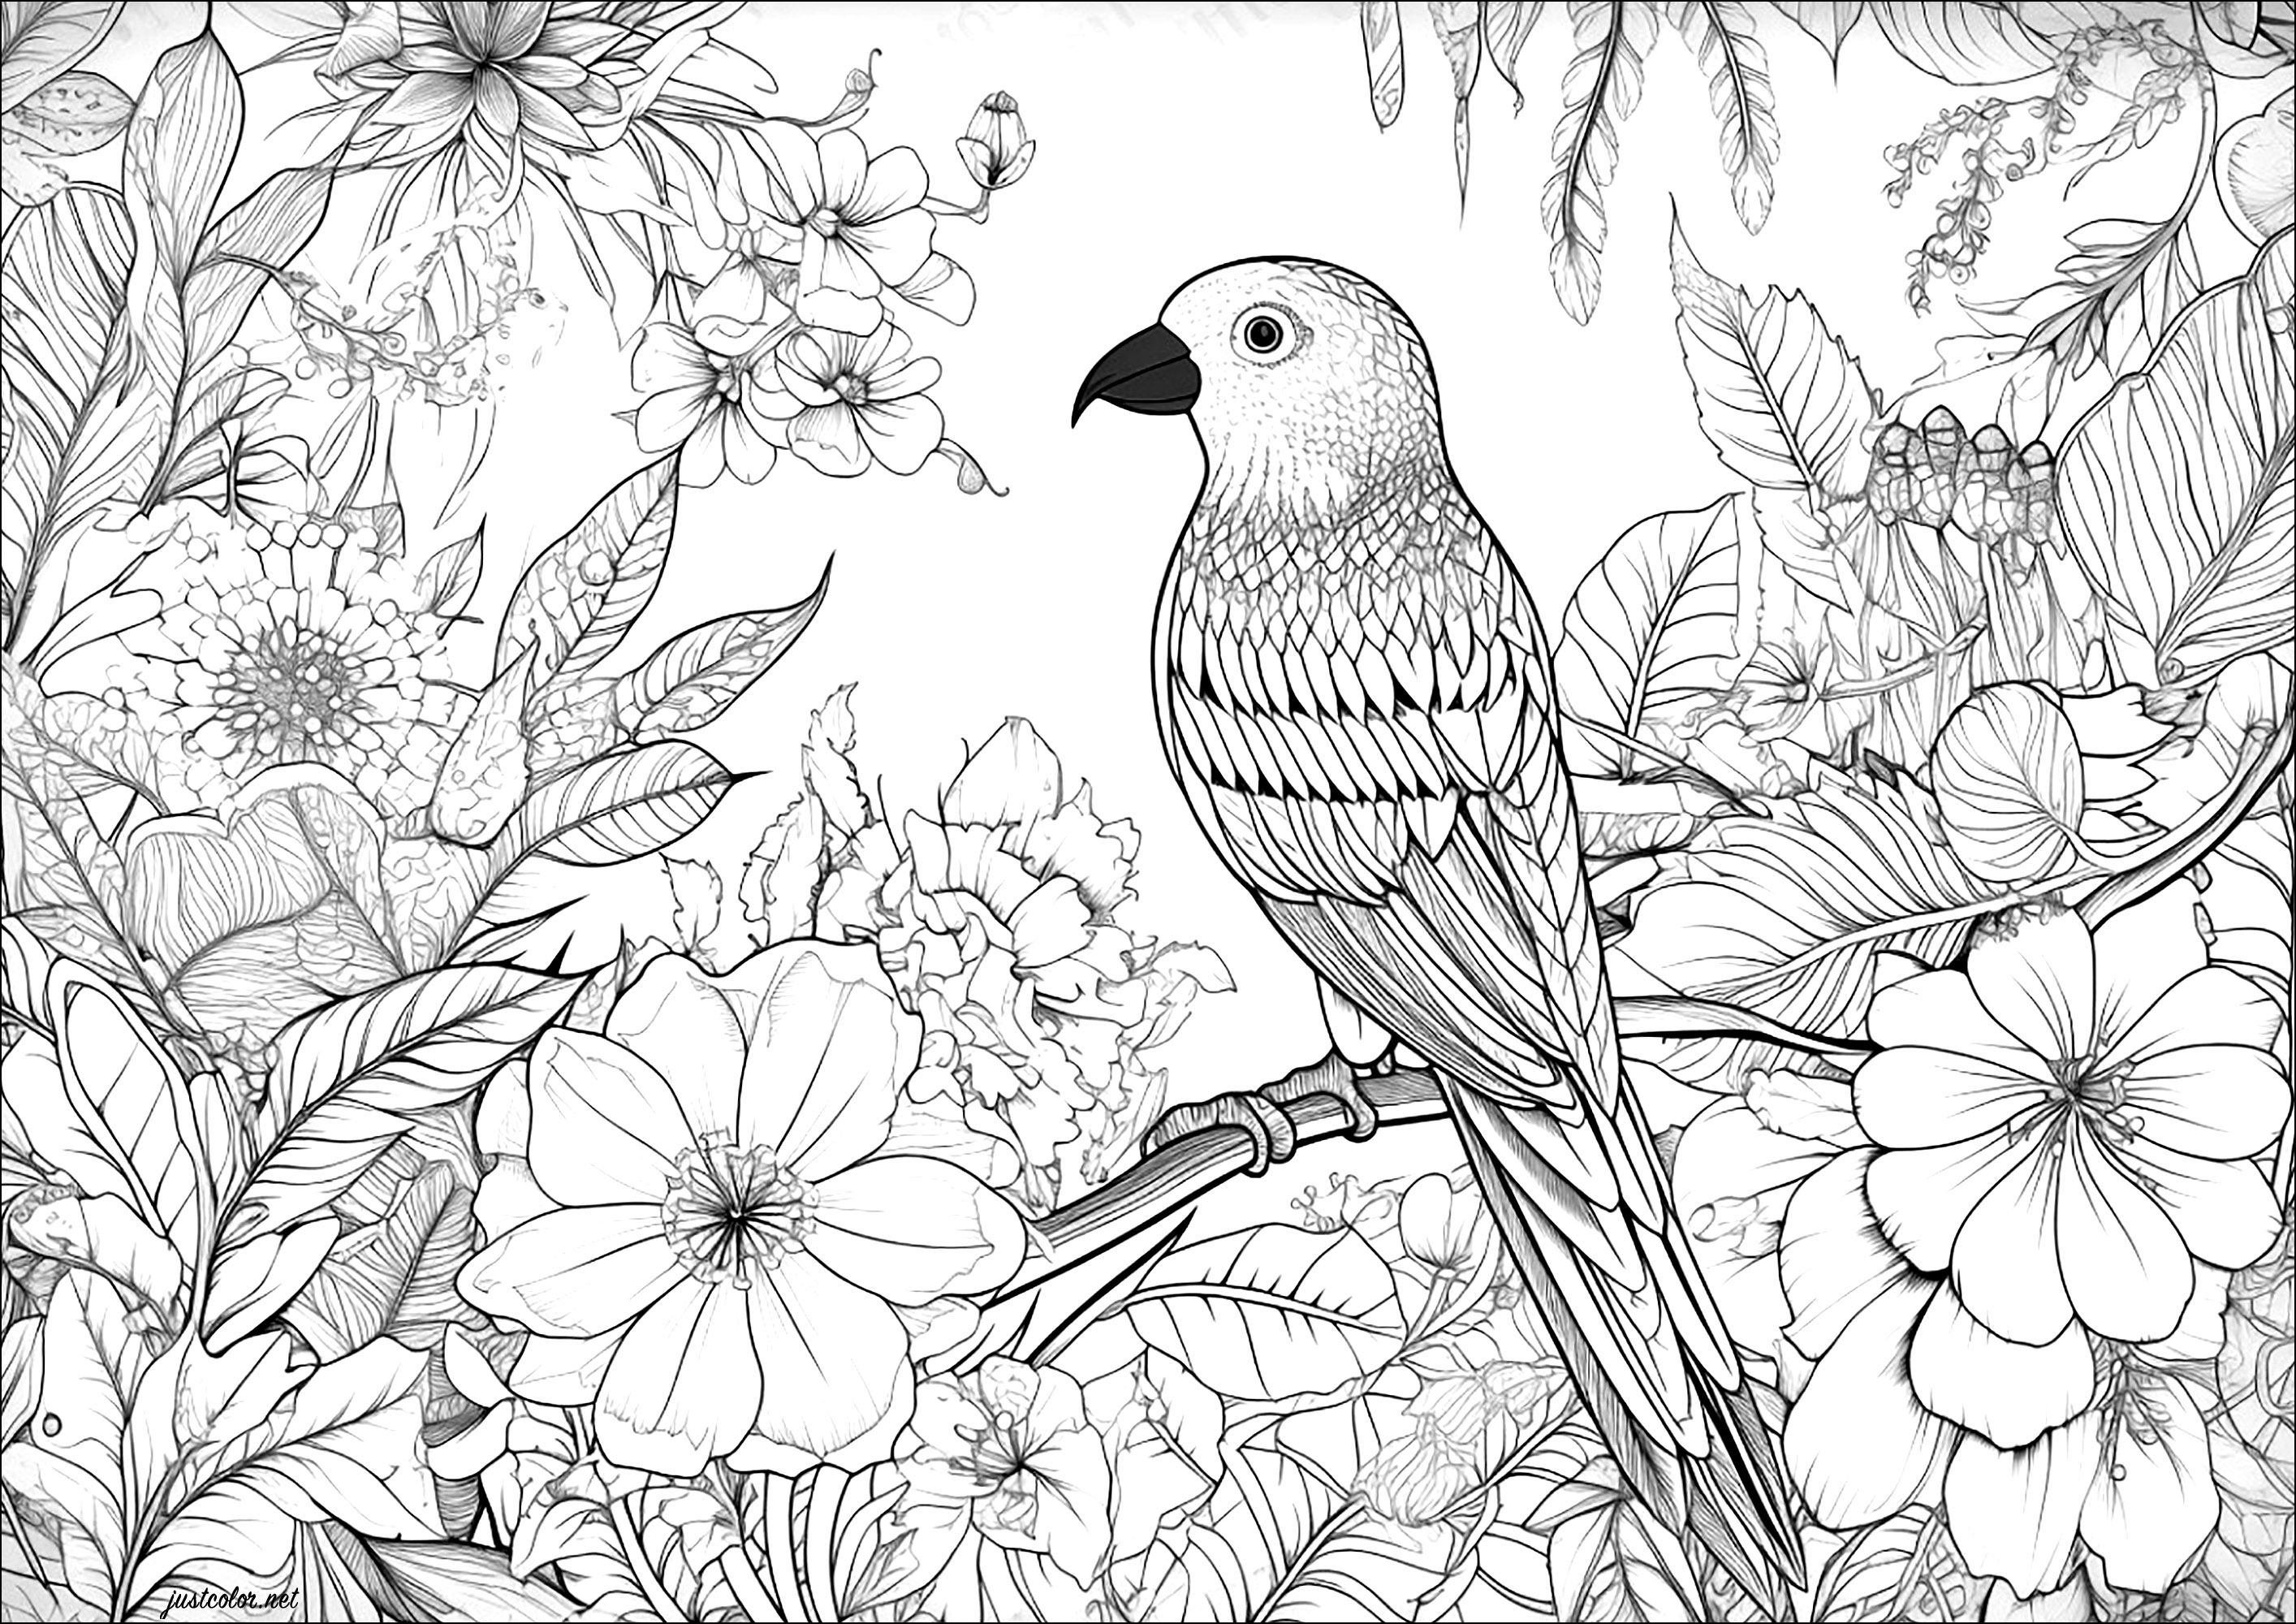 Schöner Vogel und blumiger Hintergrund. Eine Malvorlage mit vielen Details zum Ausmalen, sowohl beim Vogel als auch bei den Blumen im Hintergrund.